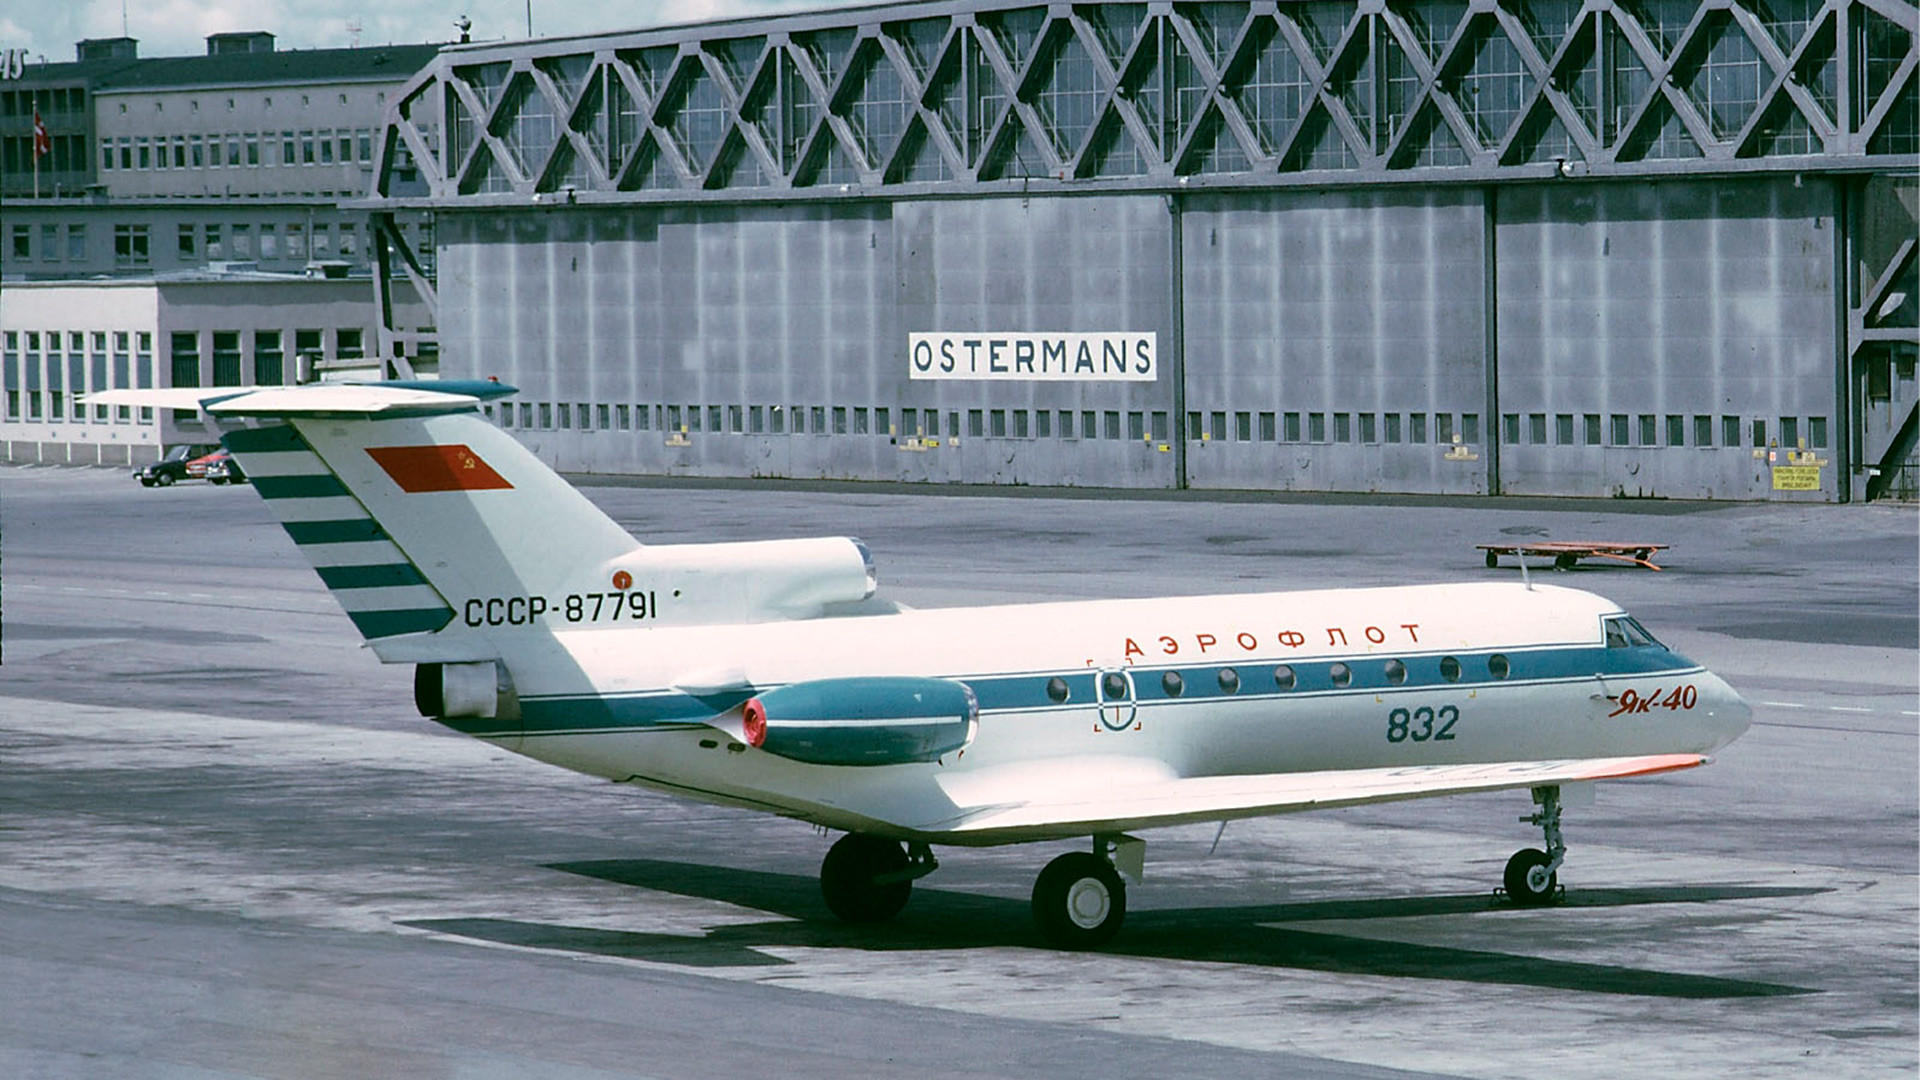 ストックホルム・ブロンマ空港での Yak-40 。